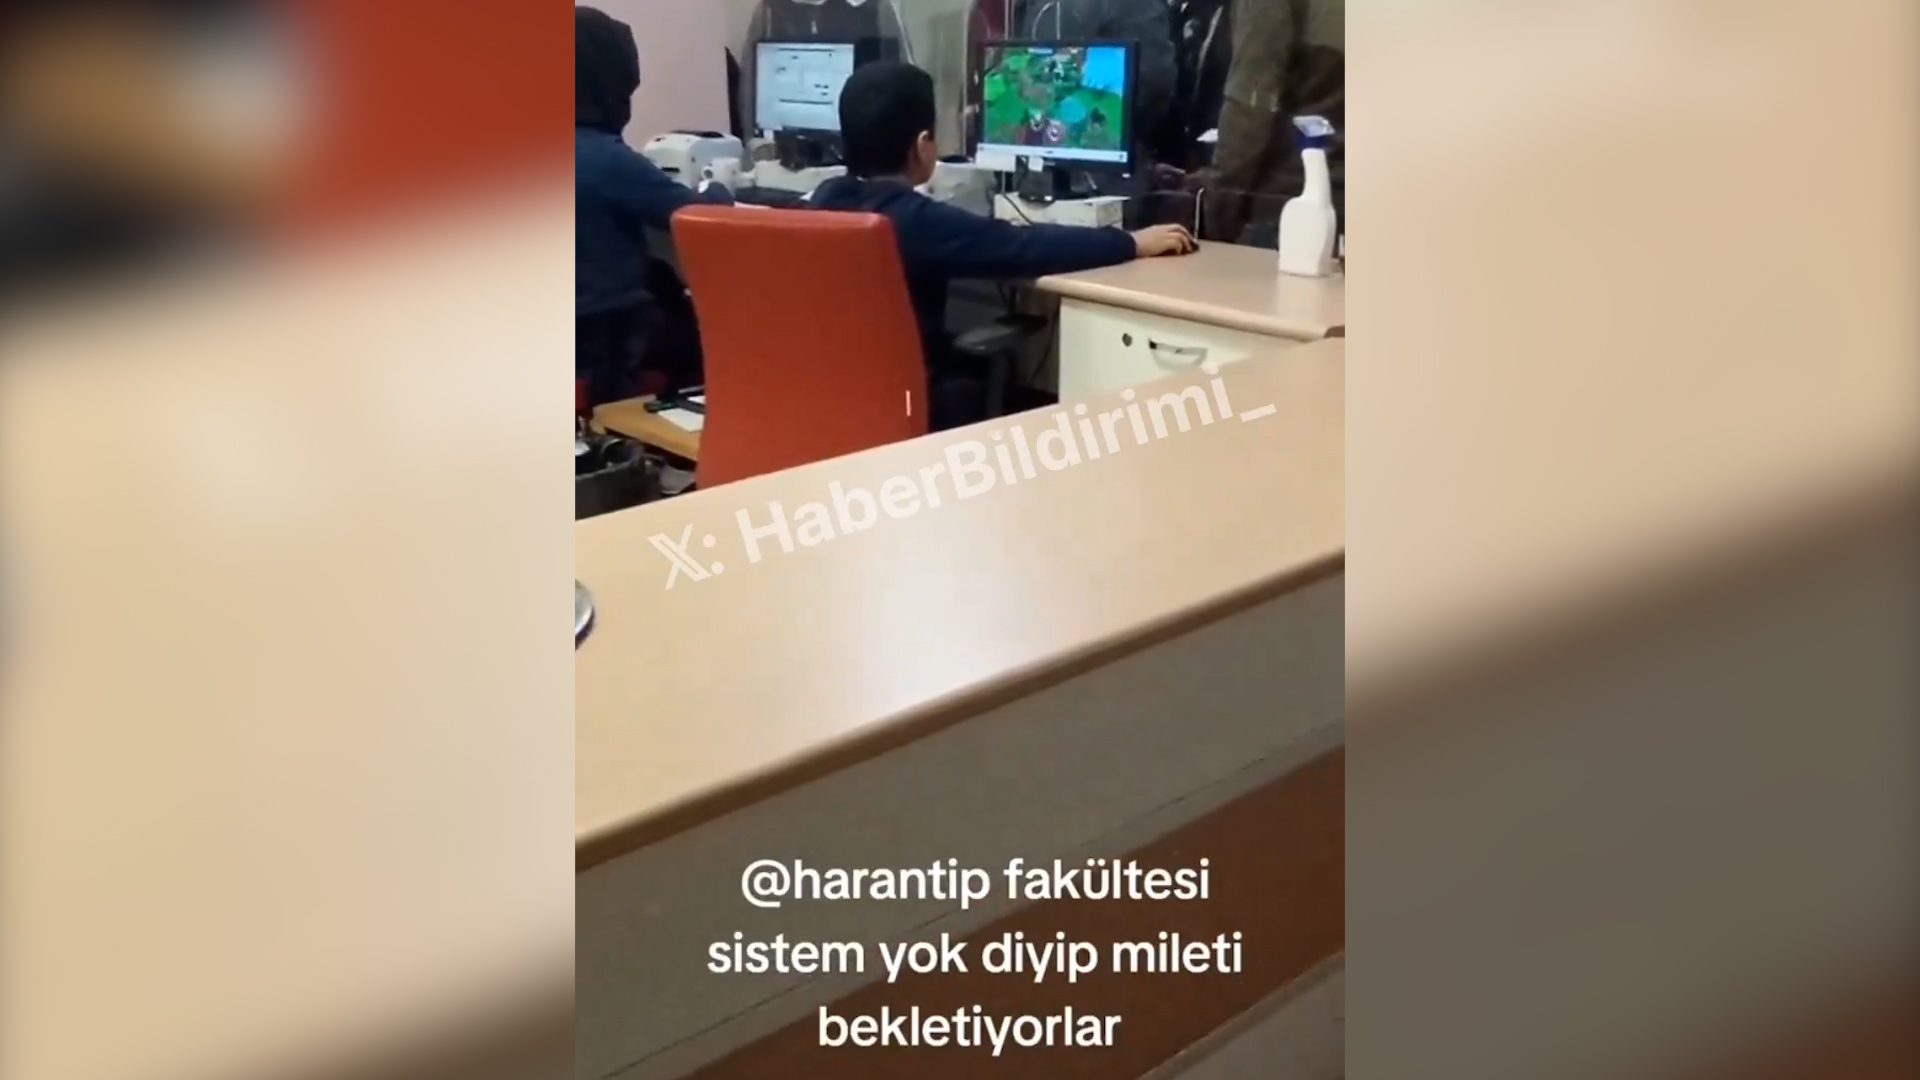 Harran Üniversitesi Hastanesi'nde hasta kayıt sırasında bilgisayar oyunu skandalı